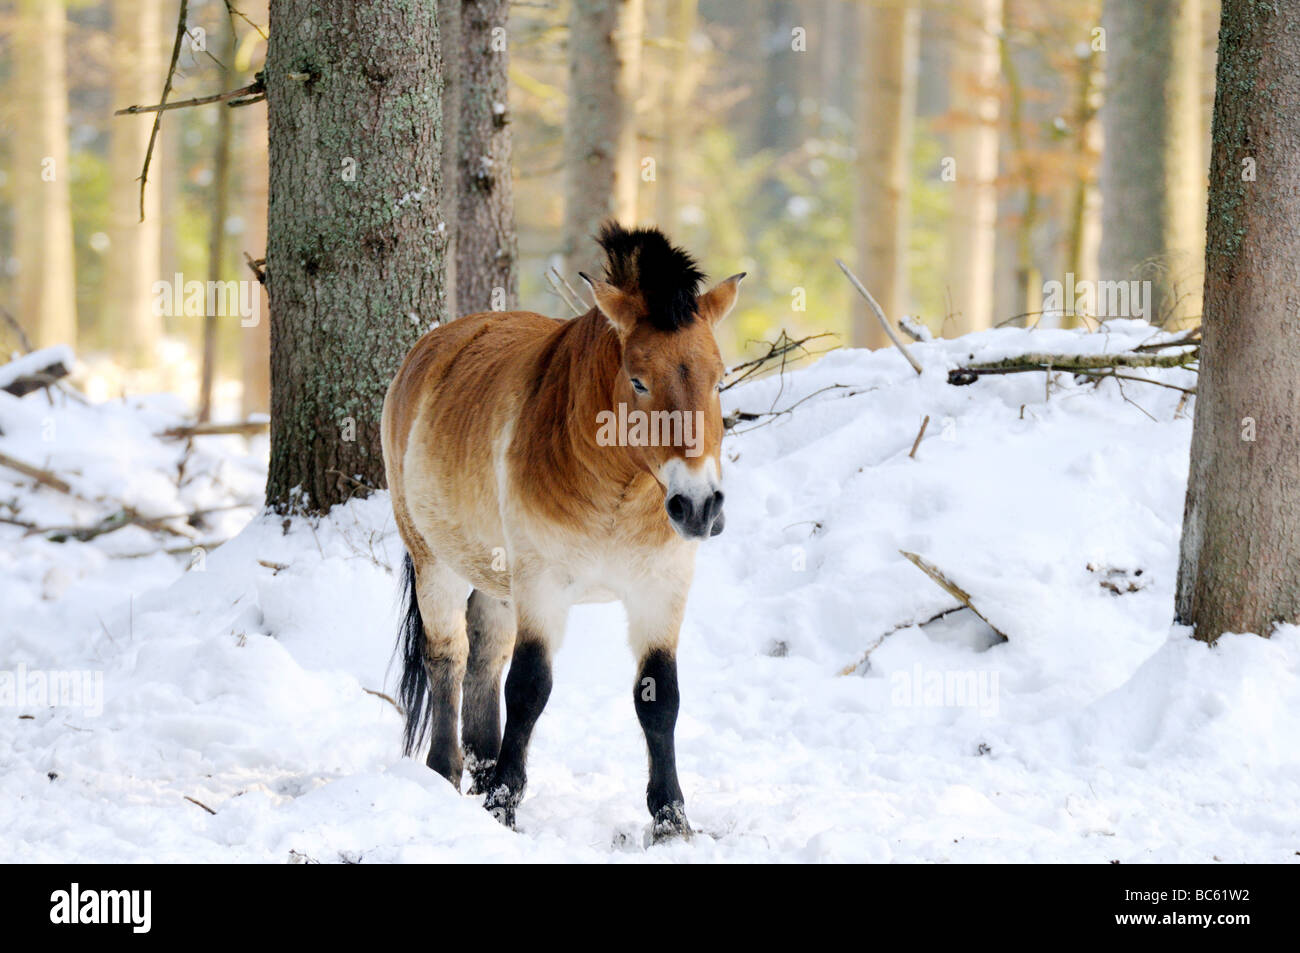 Le cheval de Przewalski (Equus caballus przewalskii) Balade en forêt, parc national de la forêt bavaroise, Bavière, Allemagne Banque D'Images